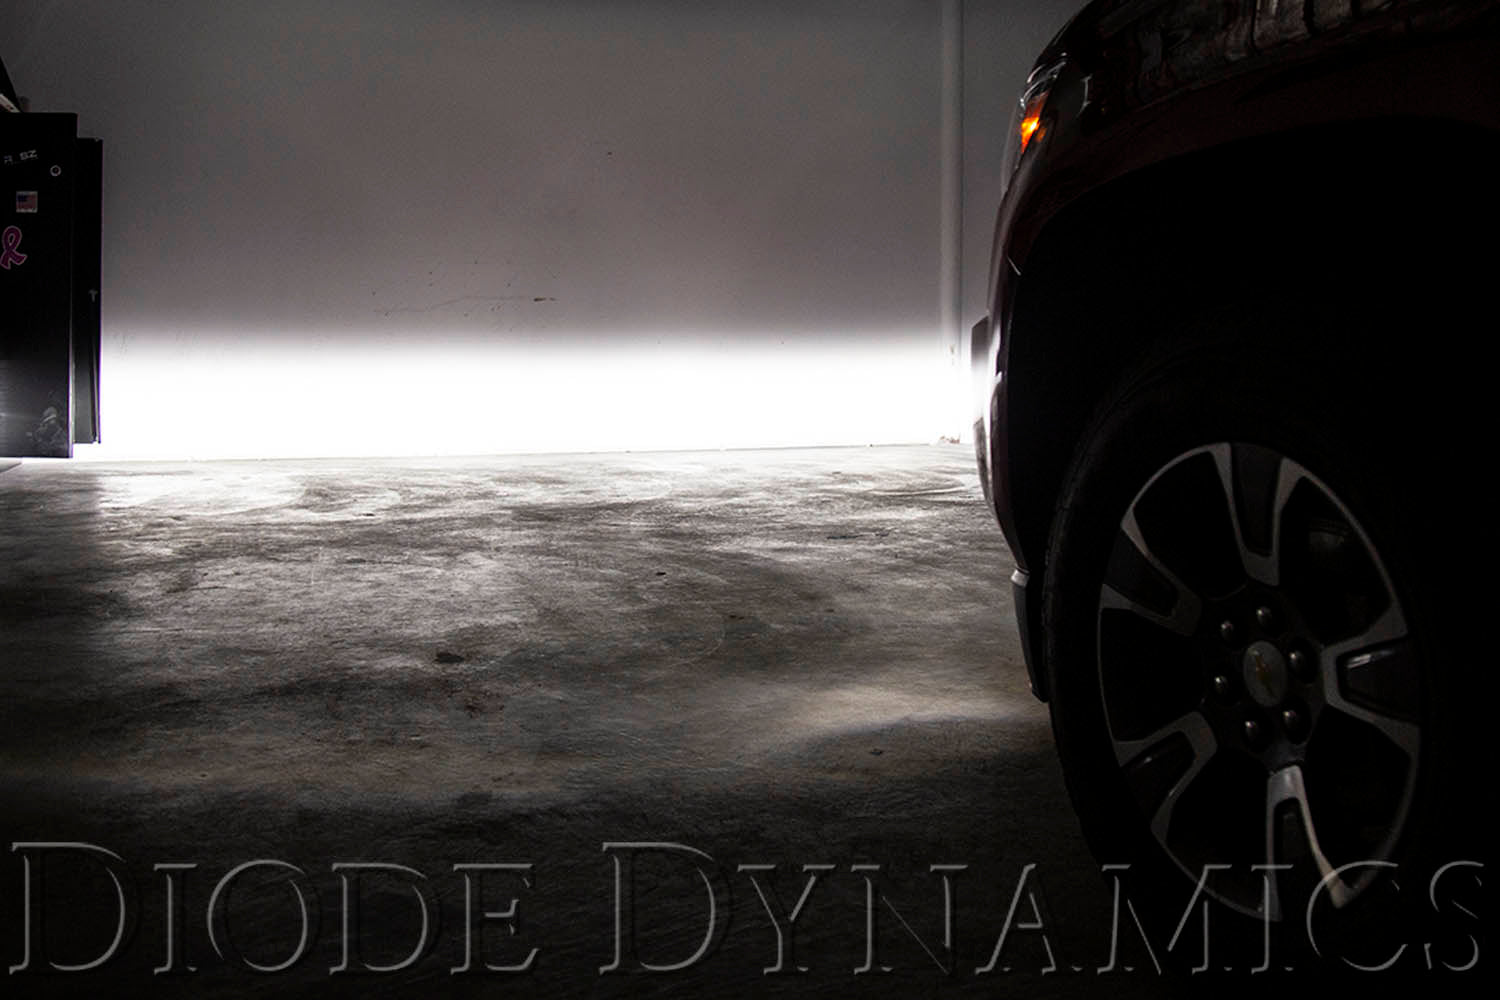 SS3 LED Fog Light Kit for 2012-2018 Chevrolet Sonic Yellow SAE Fog Sport Diode Dynamics